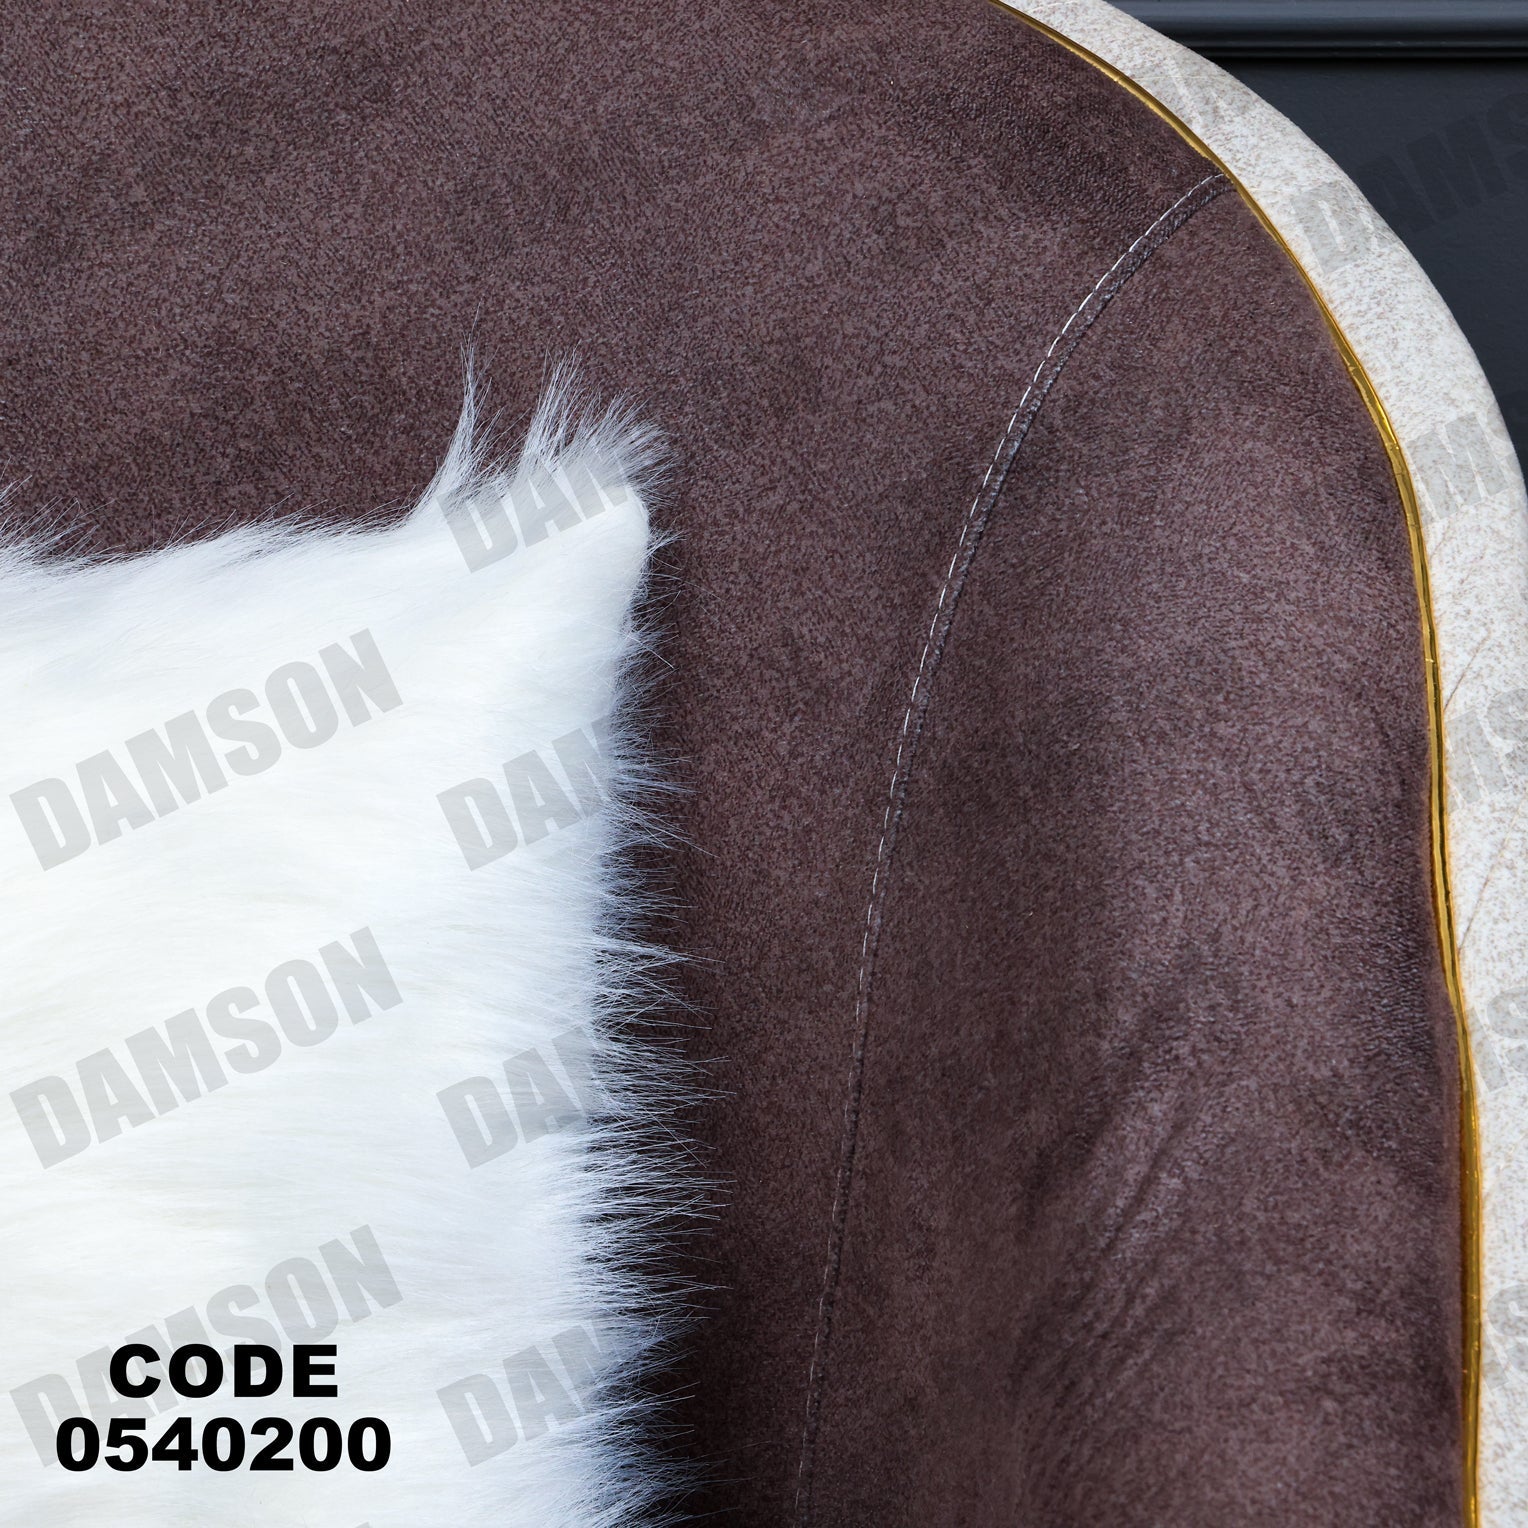 فوتية 2-402 - Damson Furnitureفوتية 2-402